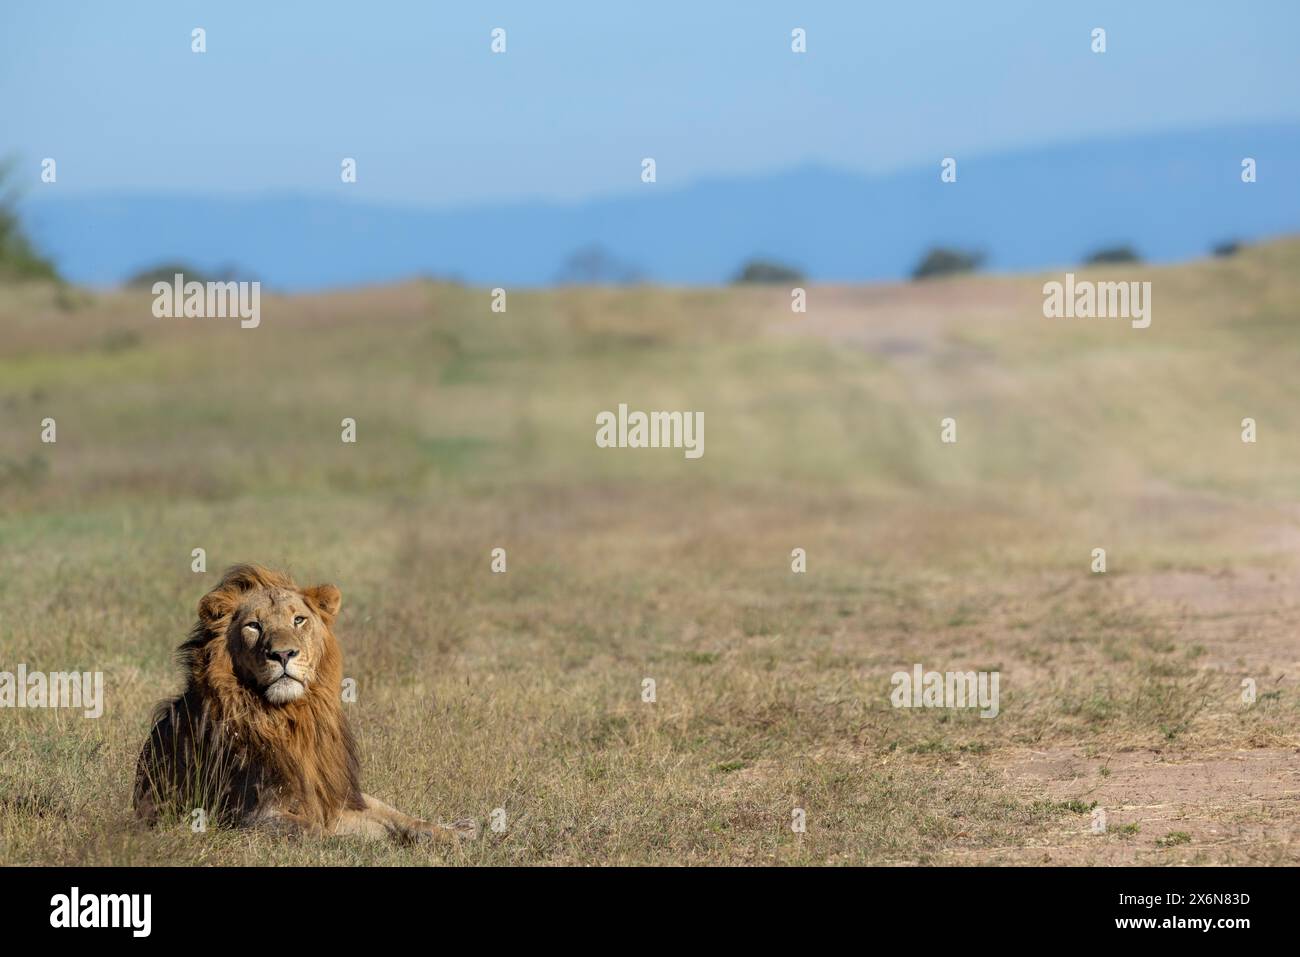 Vue panoramique d'un lion mâle adulte seul (Panthera leo) couché dans une zone ouverte Banque D'Images